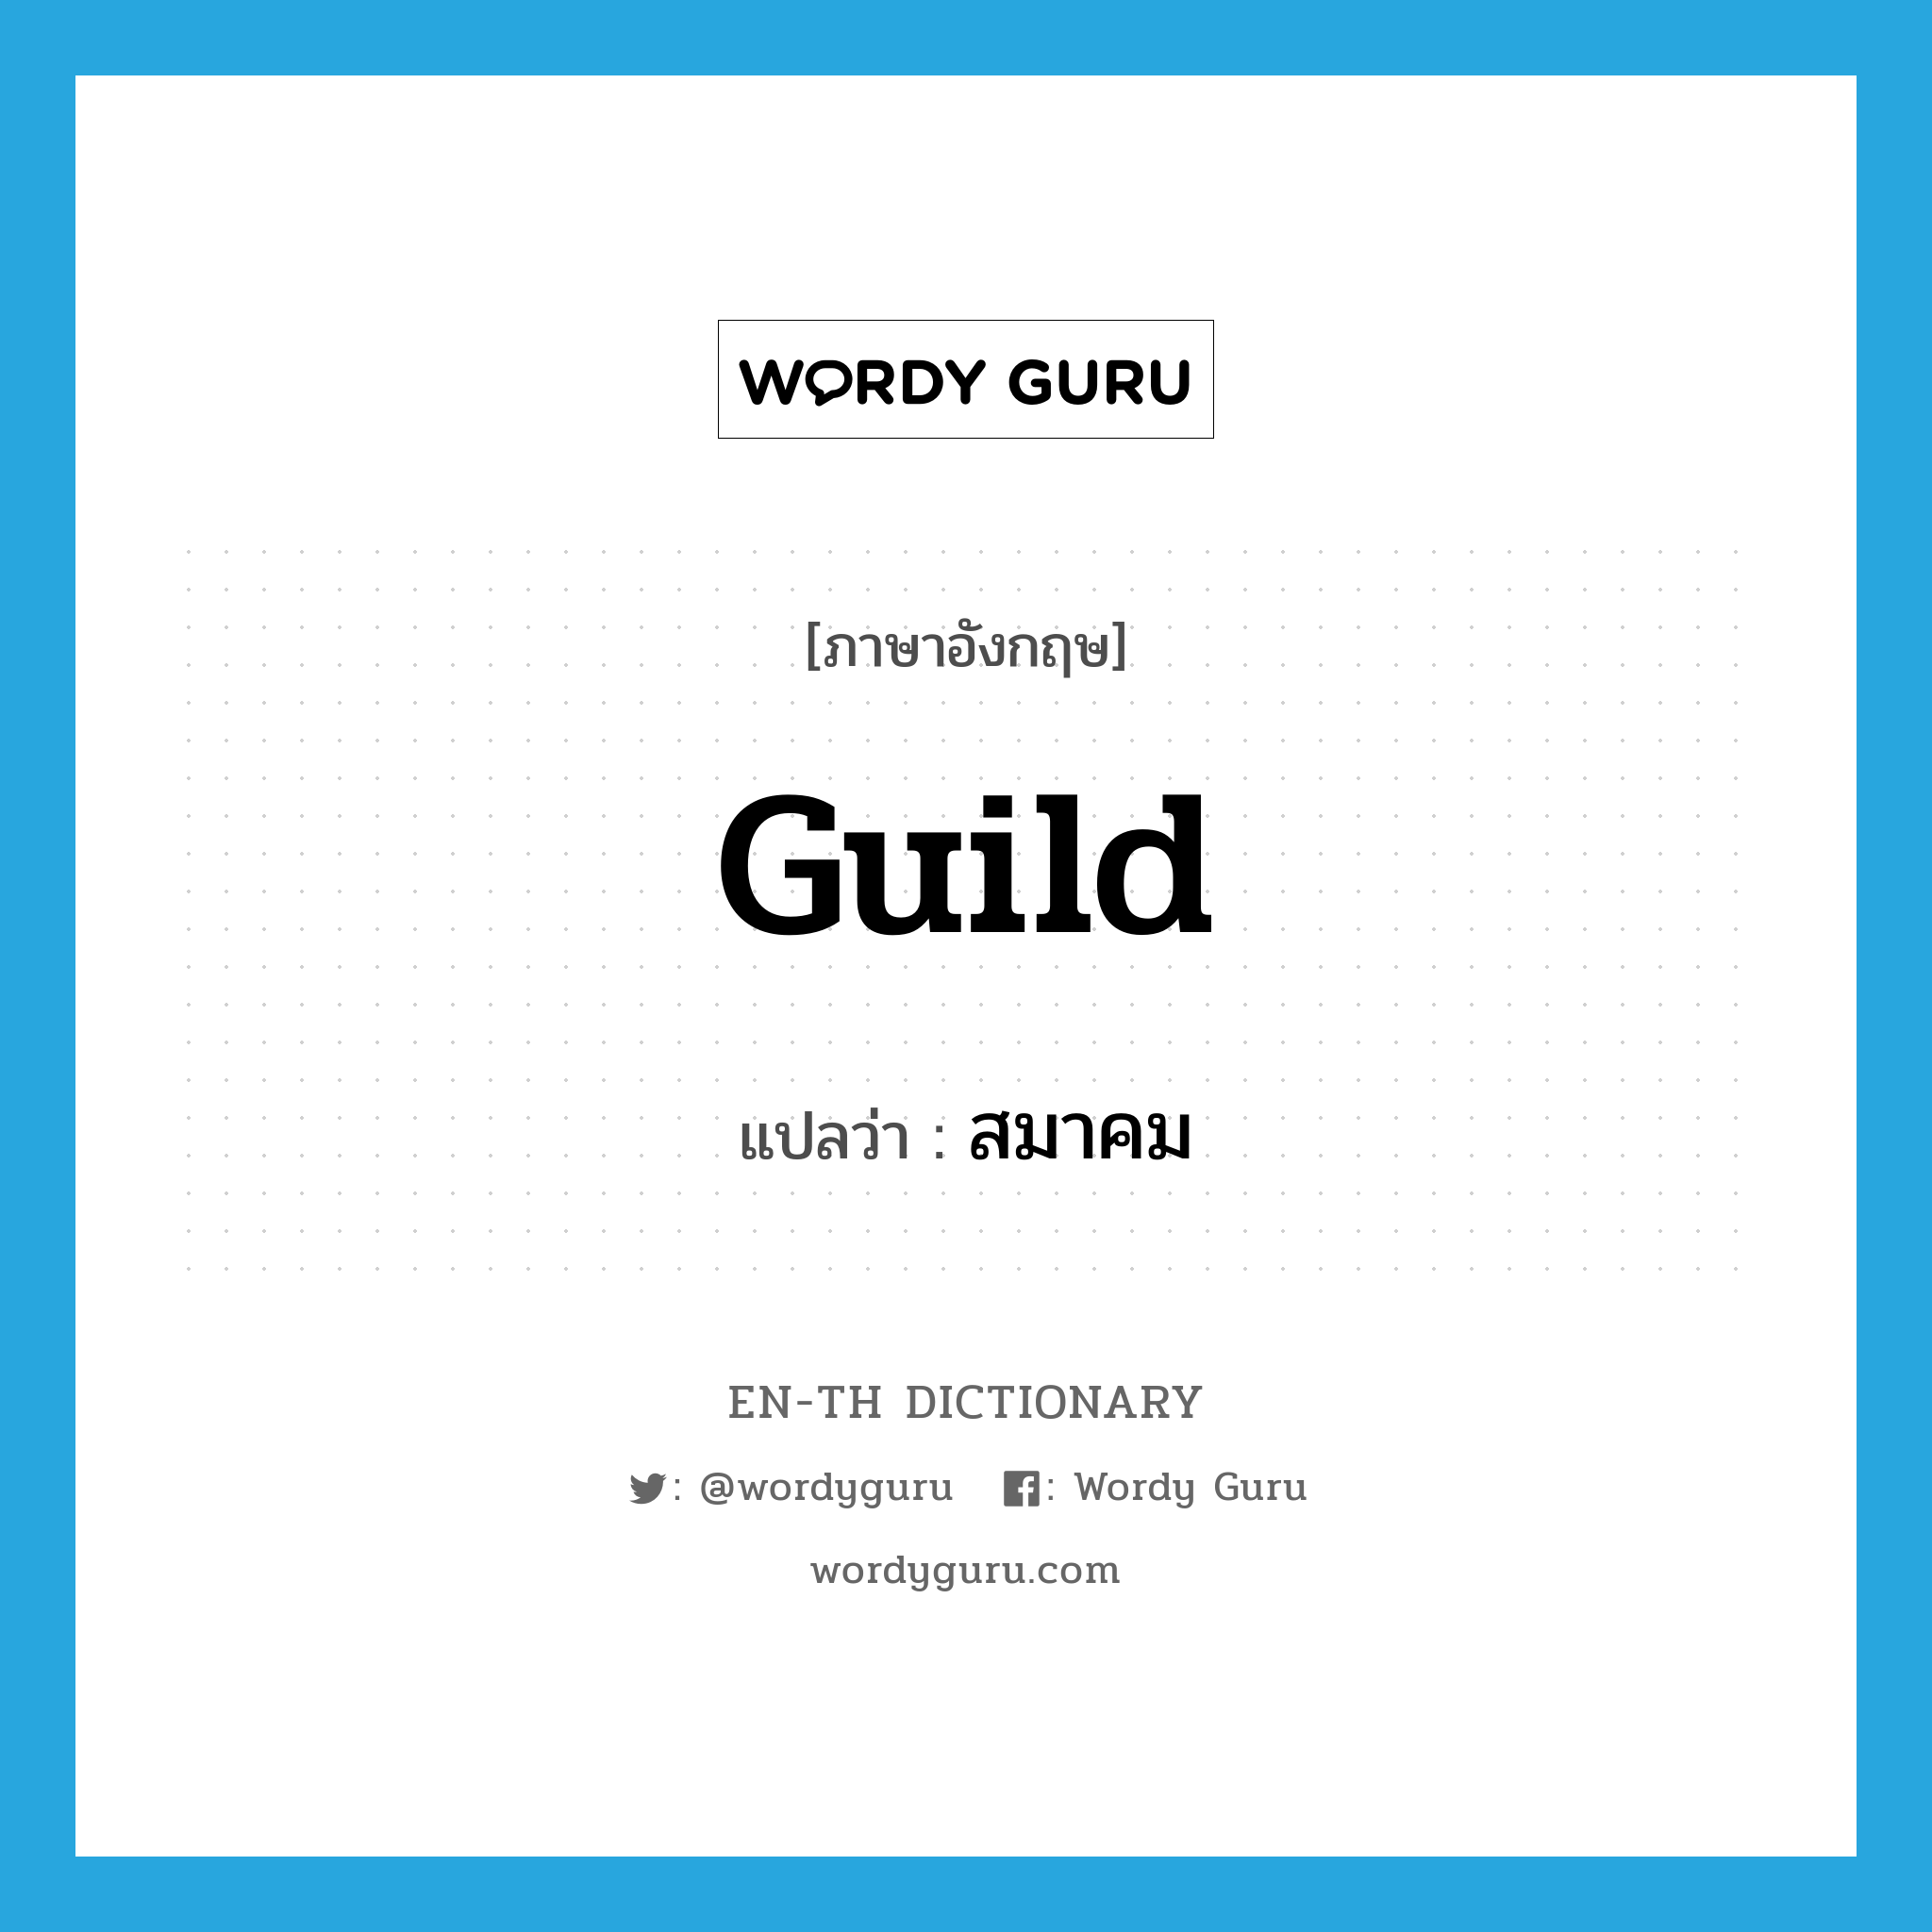 guild แปลว่า?, คำศัพท์ภาษาอังกฤษ guild แปลว่า สมาคม ประเภท N หมวด N